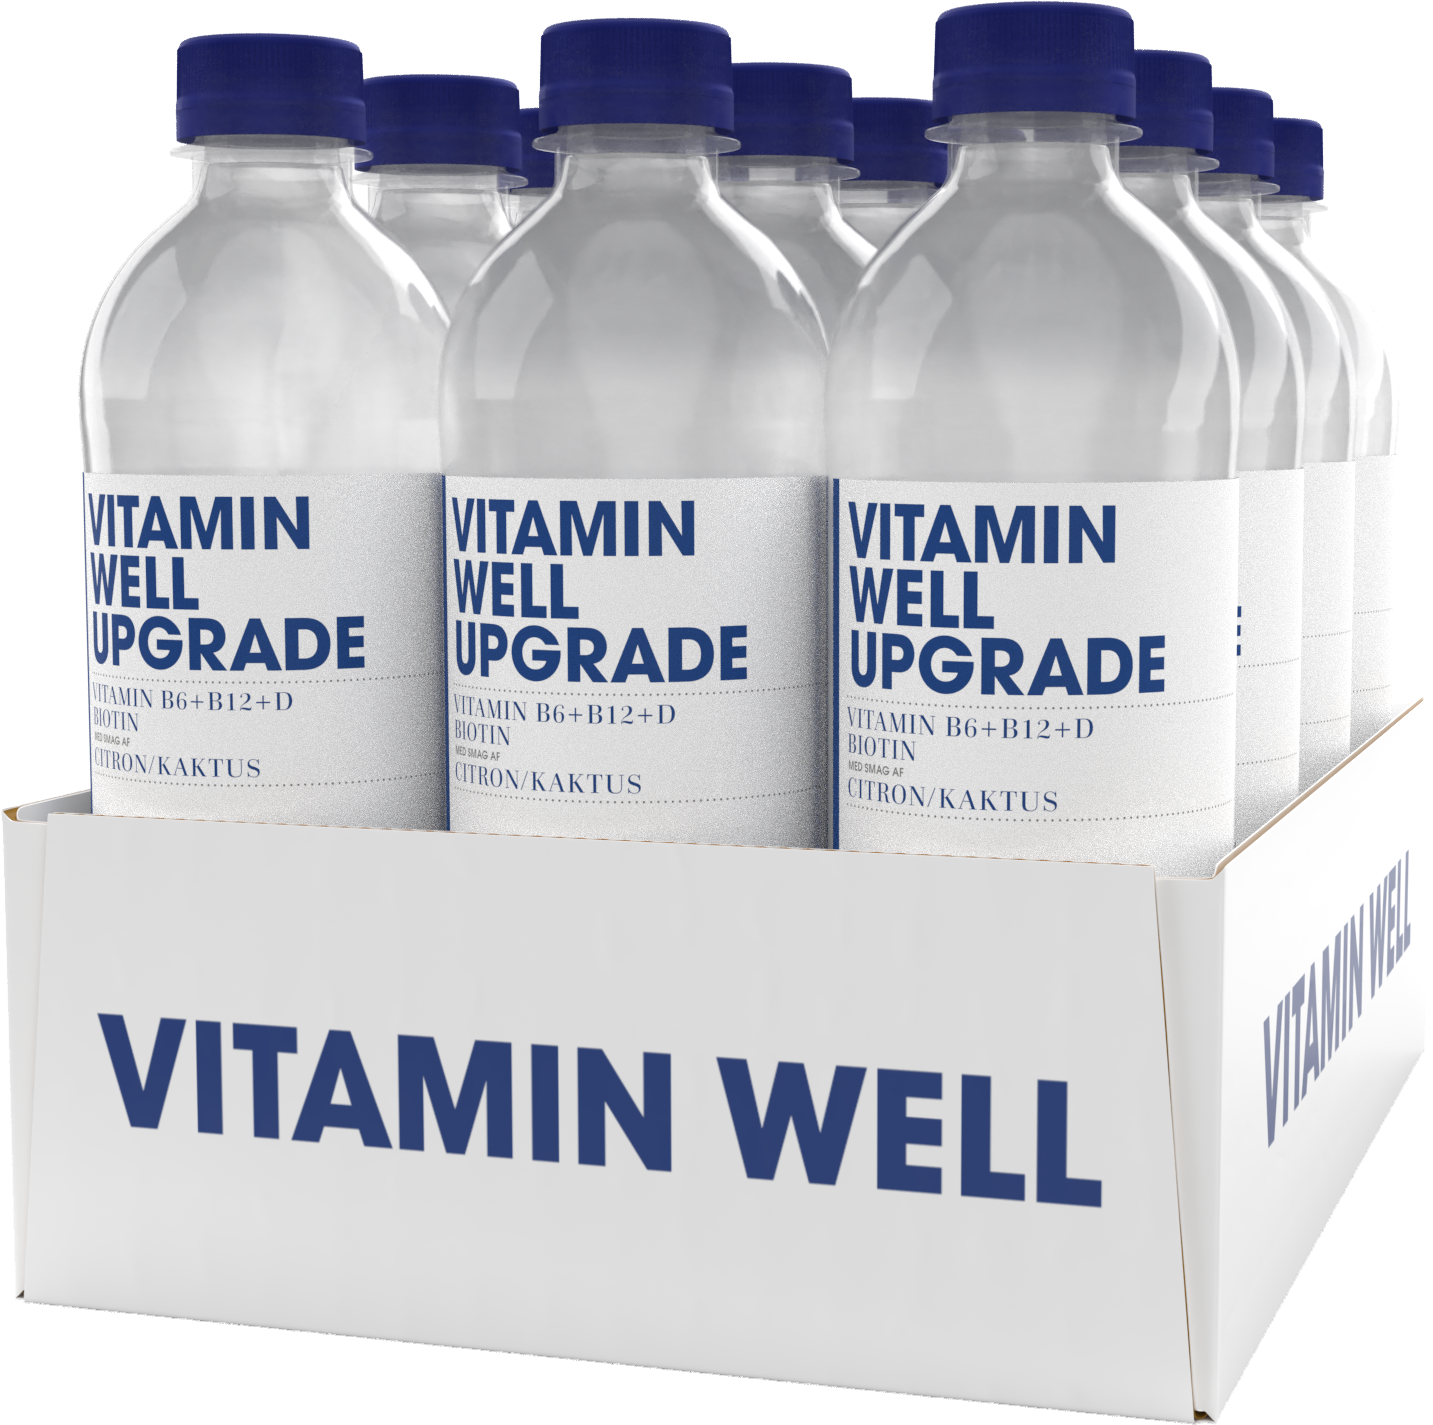 Brug Vitamin Well Upgrade (12x 500ml) til en forbedret oplevelse